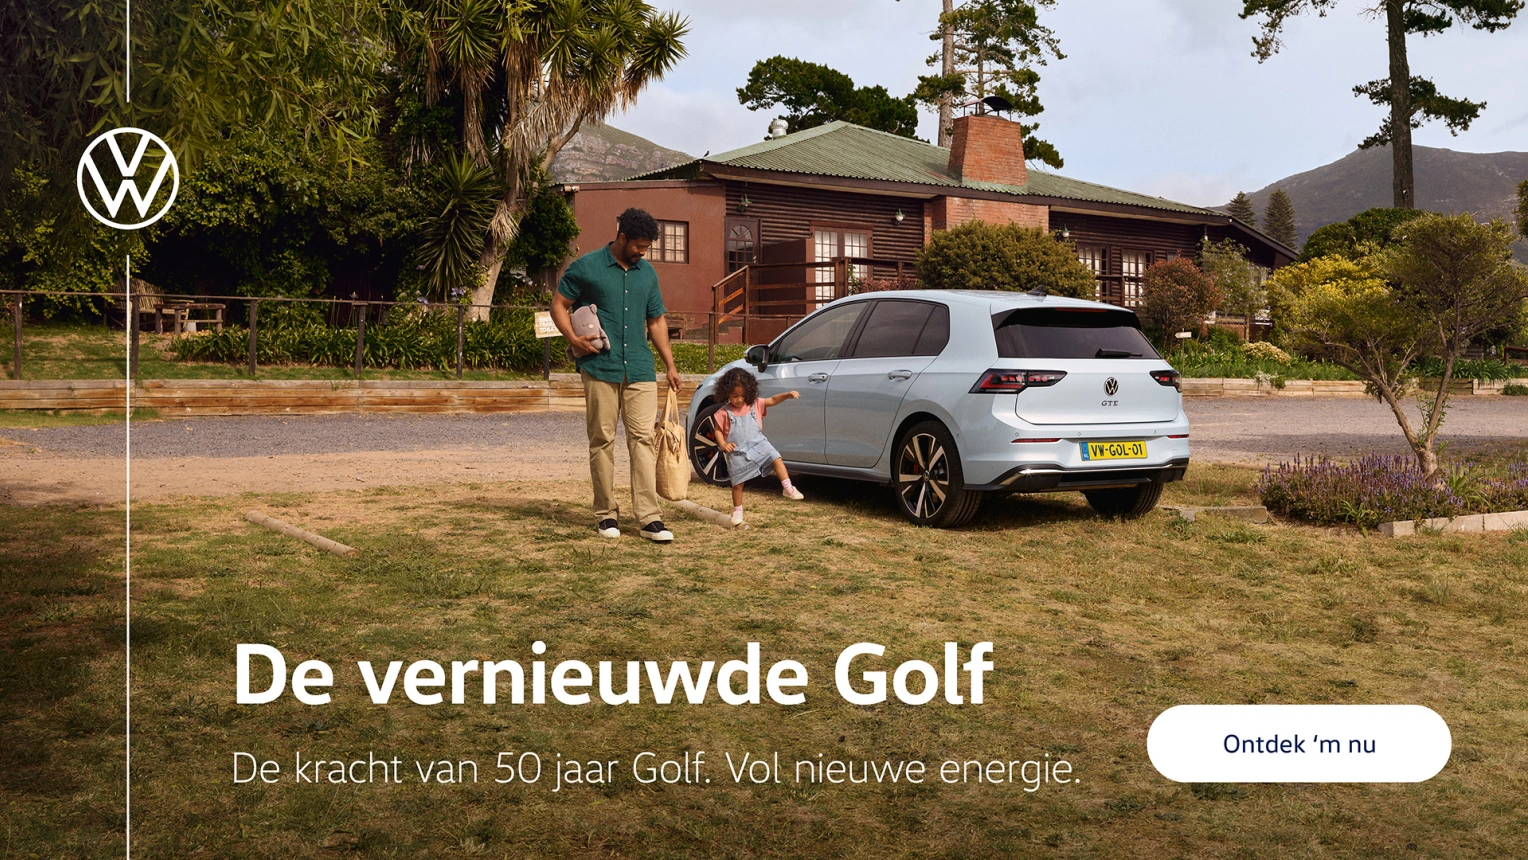 VW2308-De-vernieuwde-Golf-WP-Banner-1920x1080px-v12.jpg